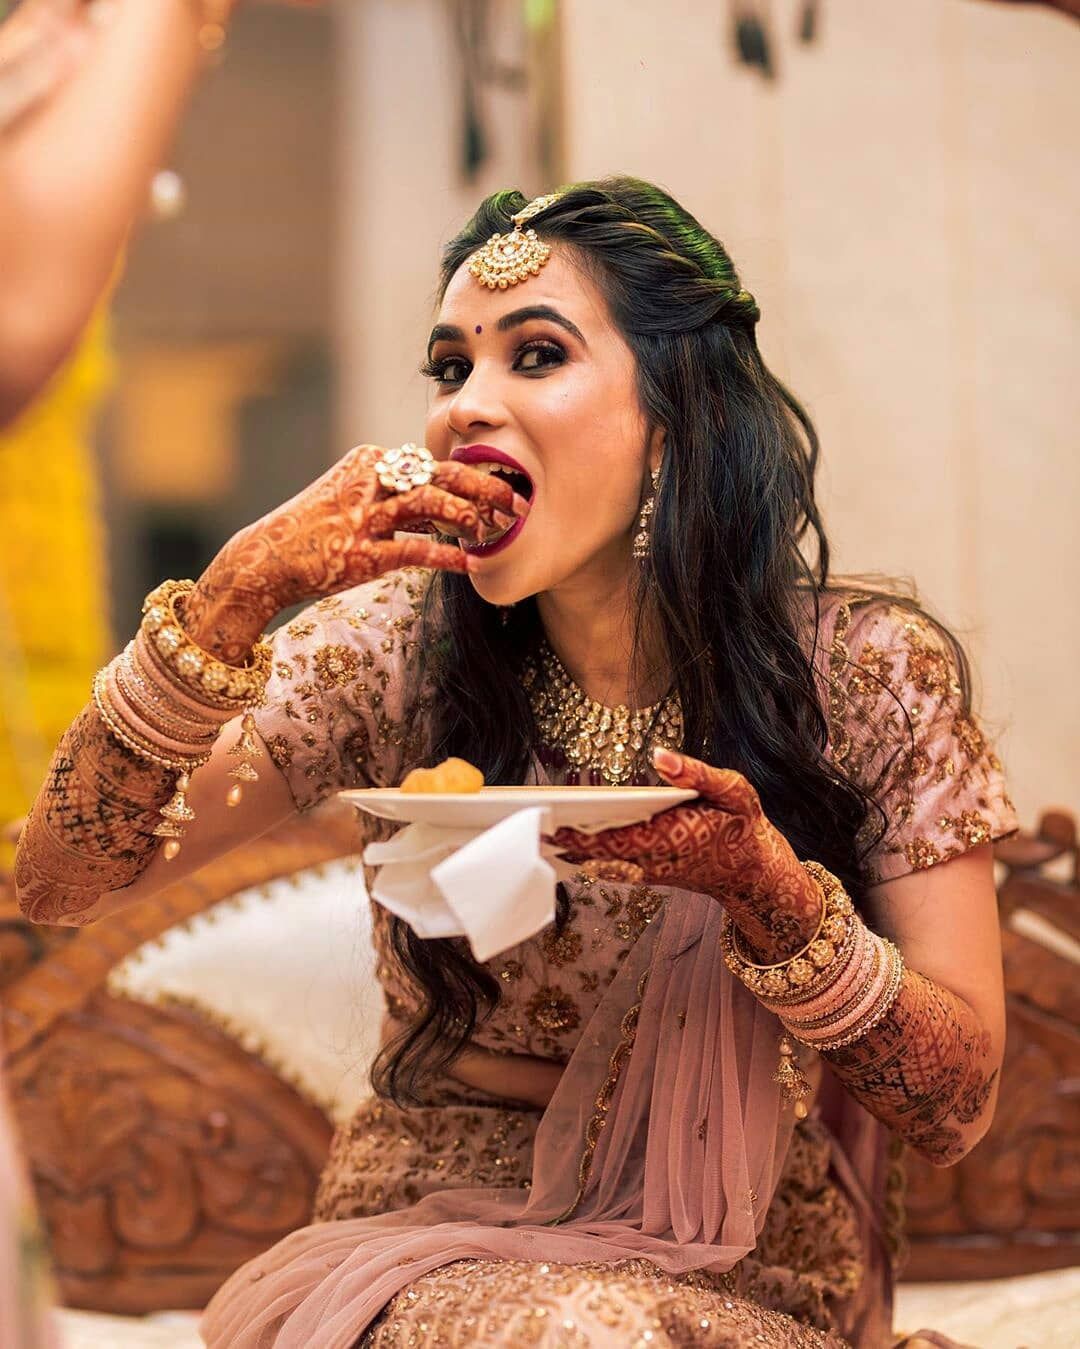 Cool Bridal Wedding Shoot Poses- foodie bride